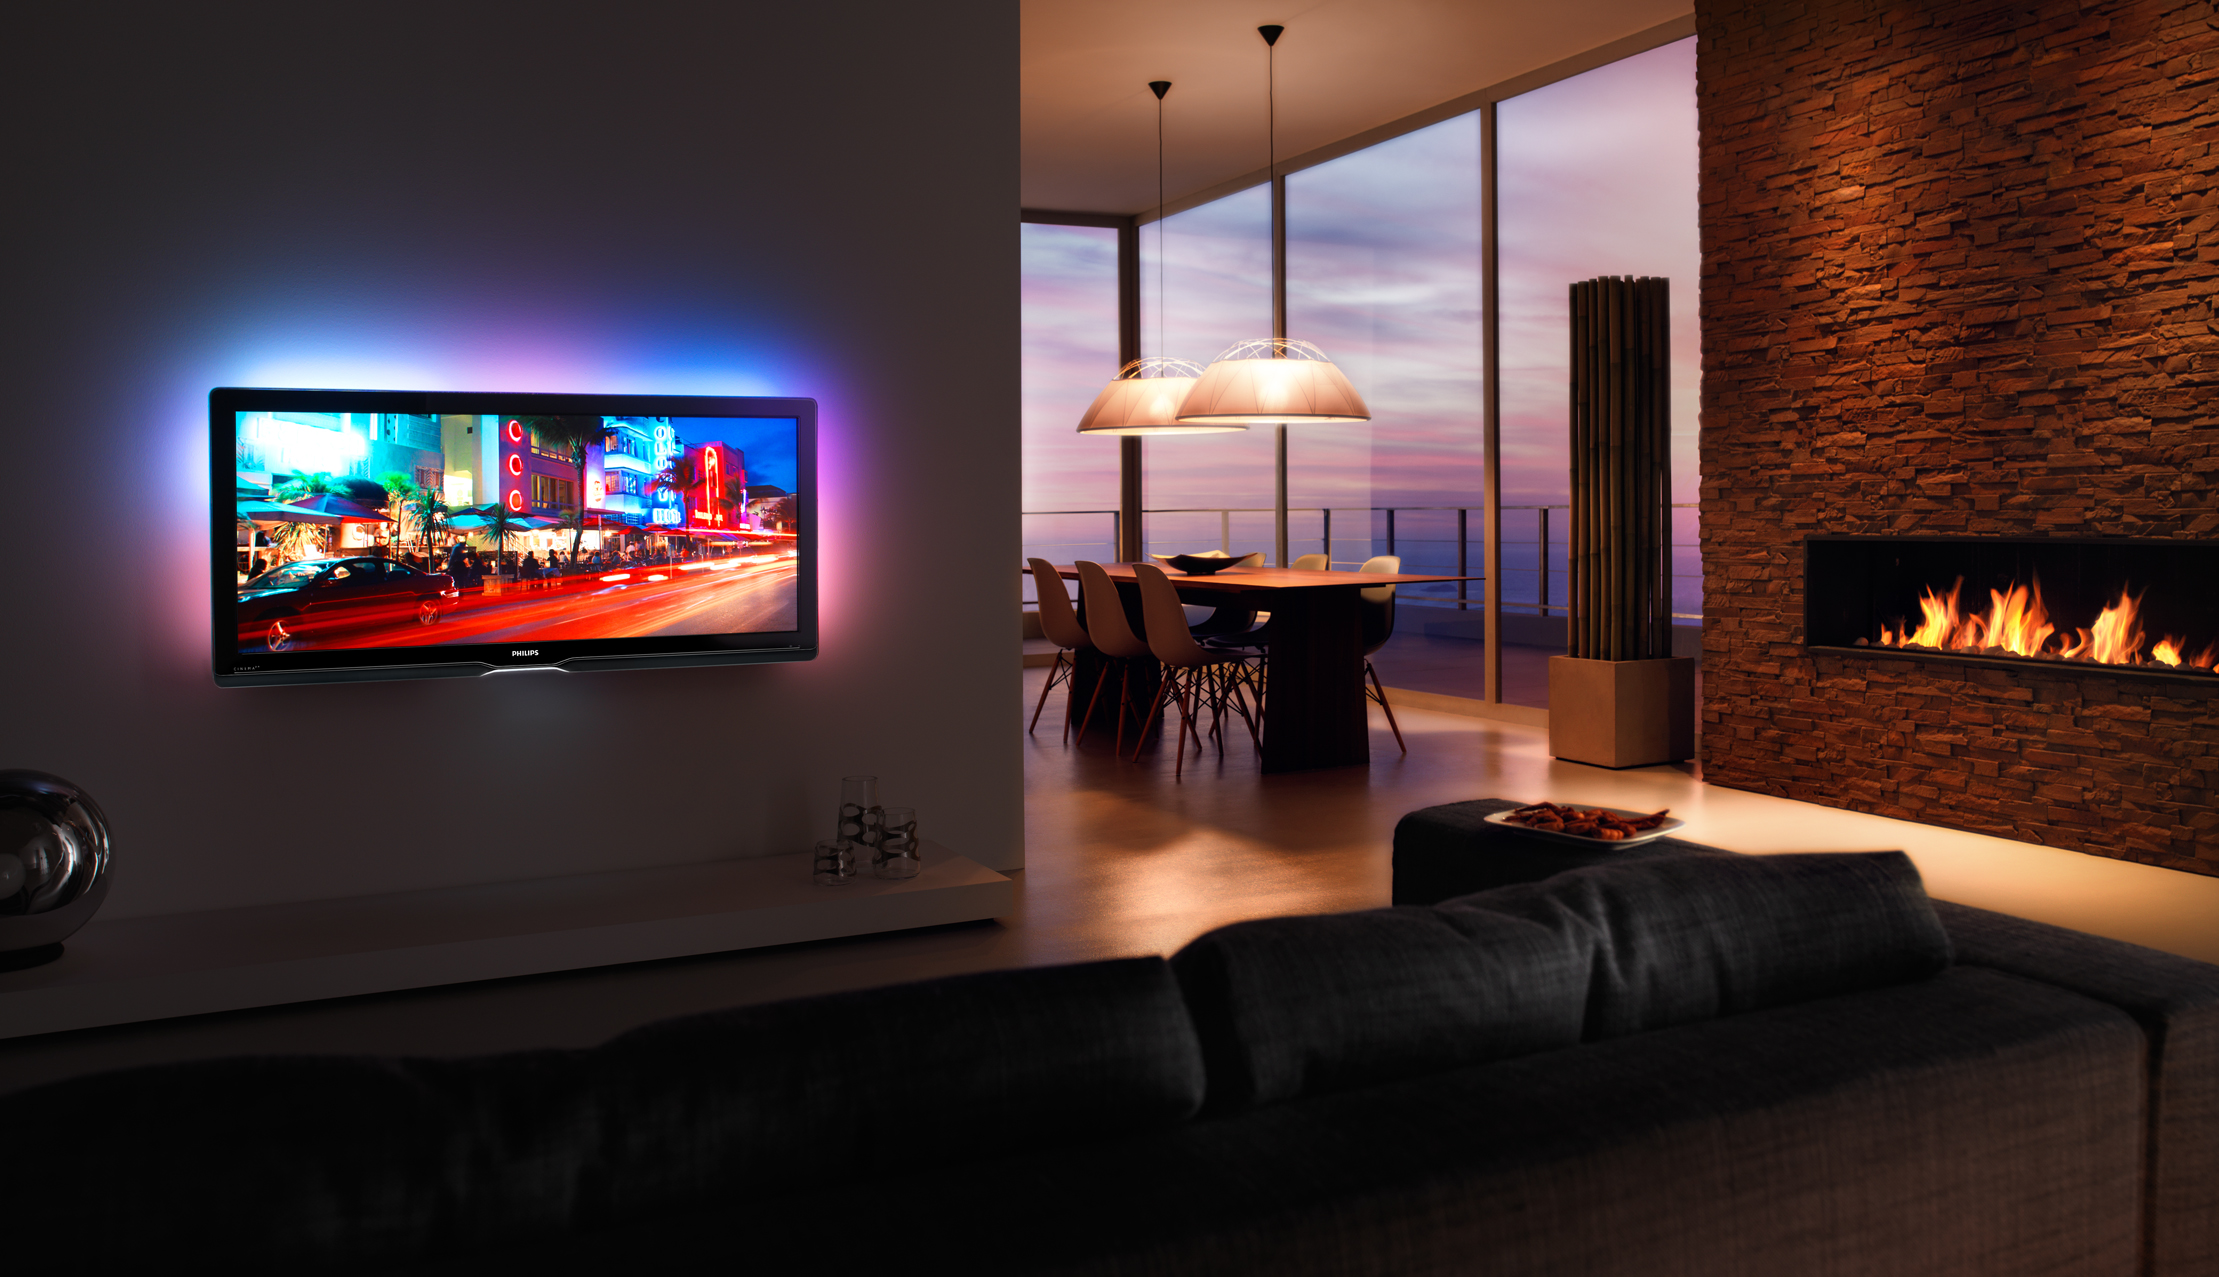 Существует ли телевизор. Телевизор Philips Cinema 21 9 TV. Филипс плазма с подсветкой. Телевизор в интерьере. Плазменный телевизор на стене.